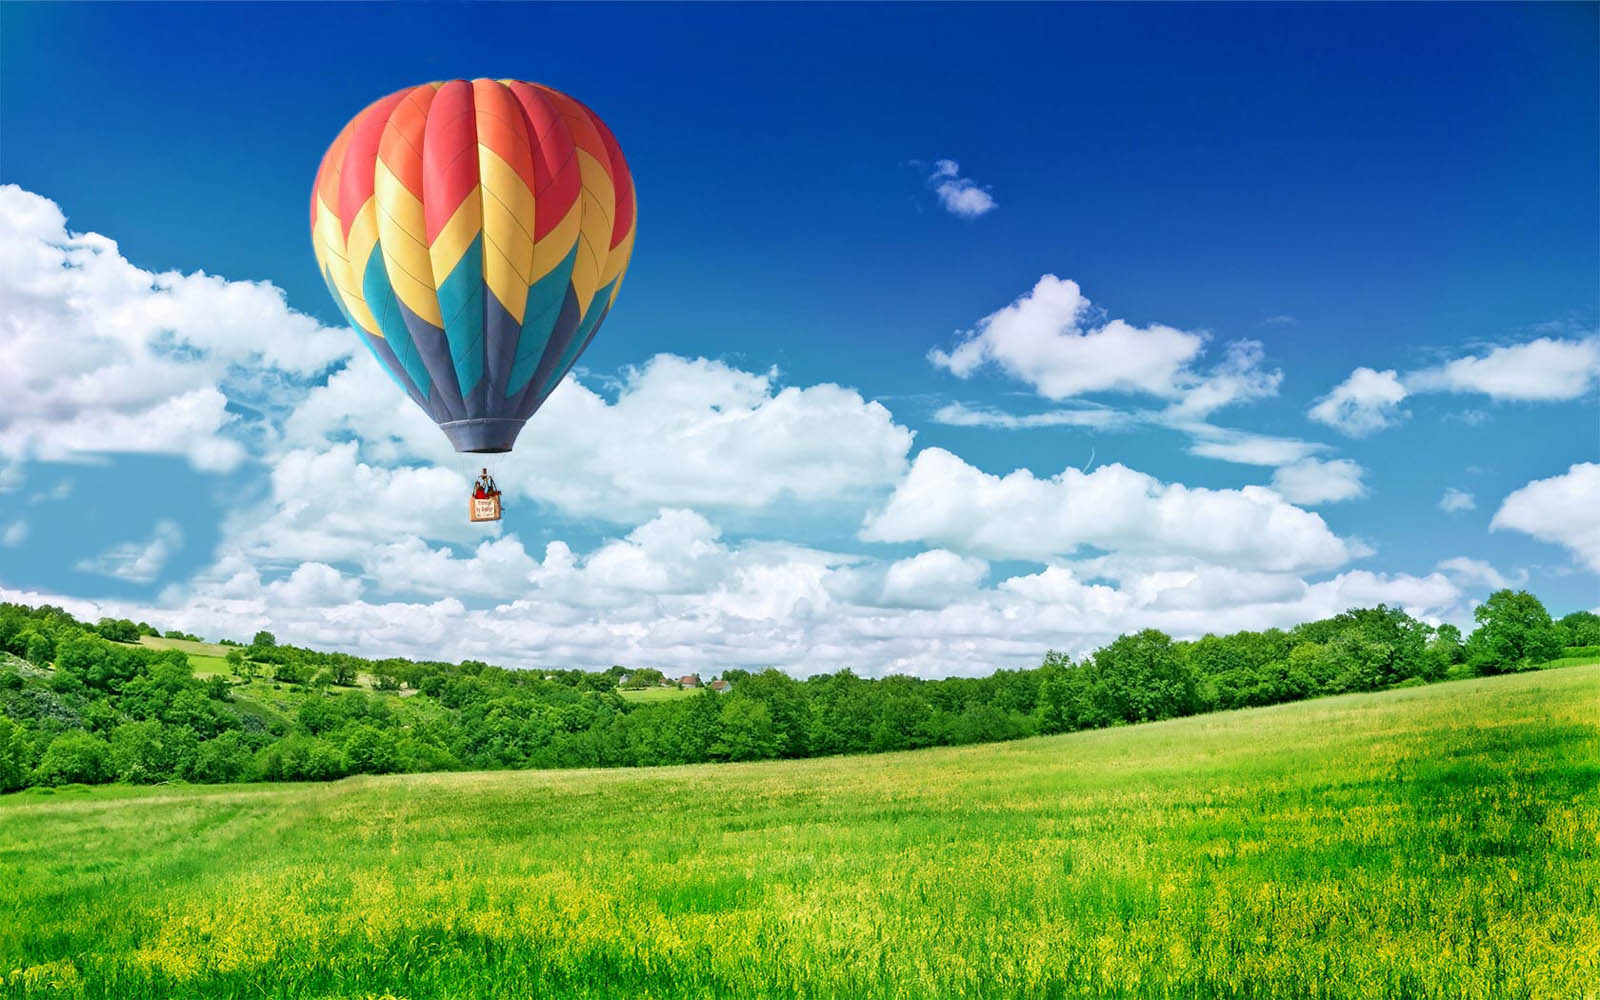 hot air balloon wallpaper,hot air balloon,hot air ballooning,sky,nature,natural landscape